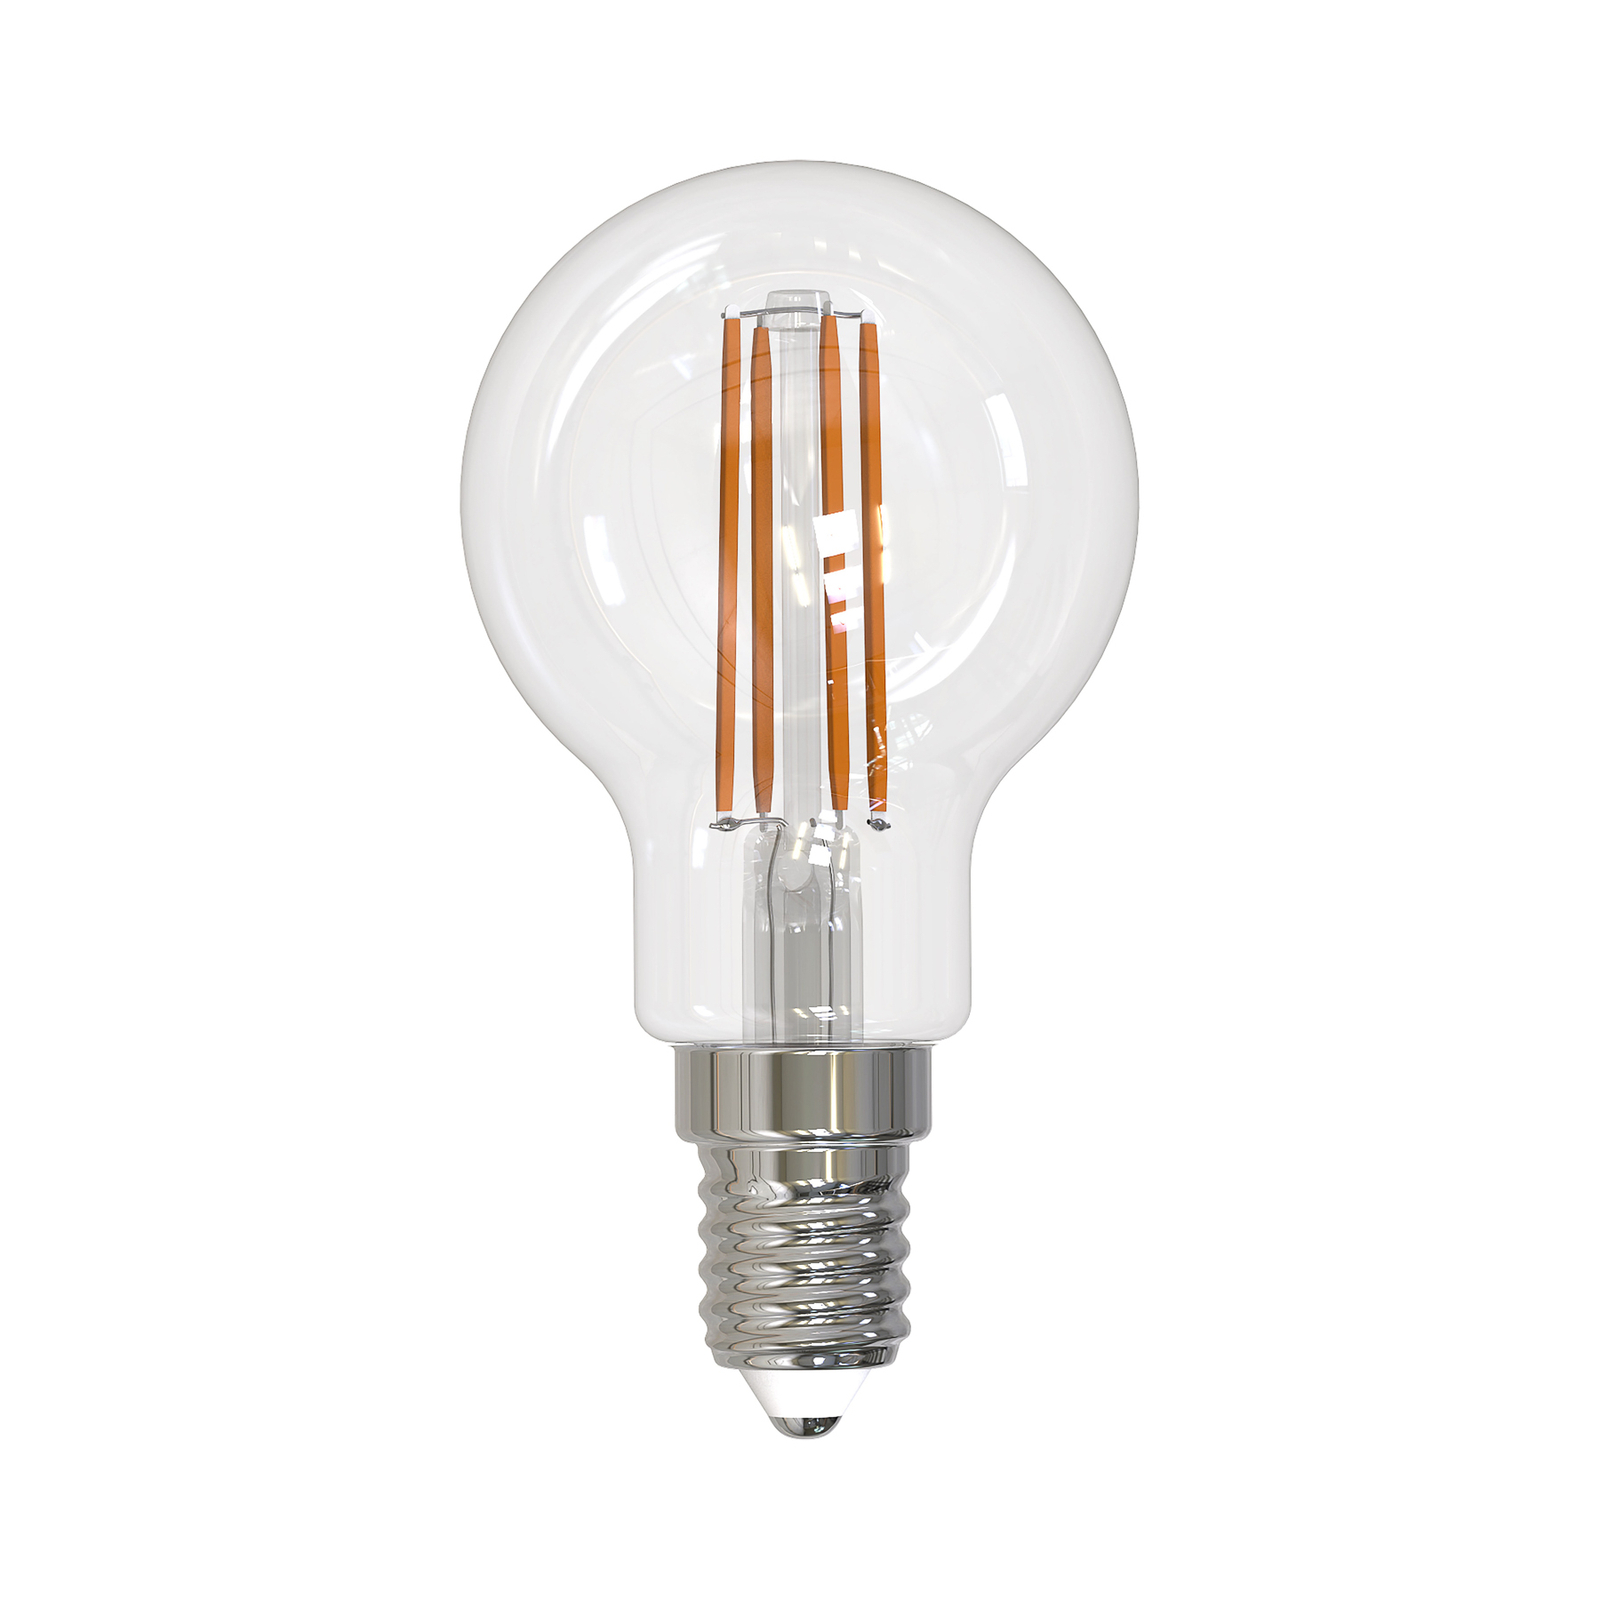 Arcchio LED-filamentlampa E14 G45, set om 3, 2700 K